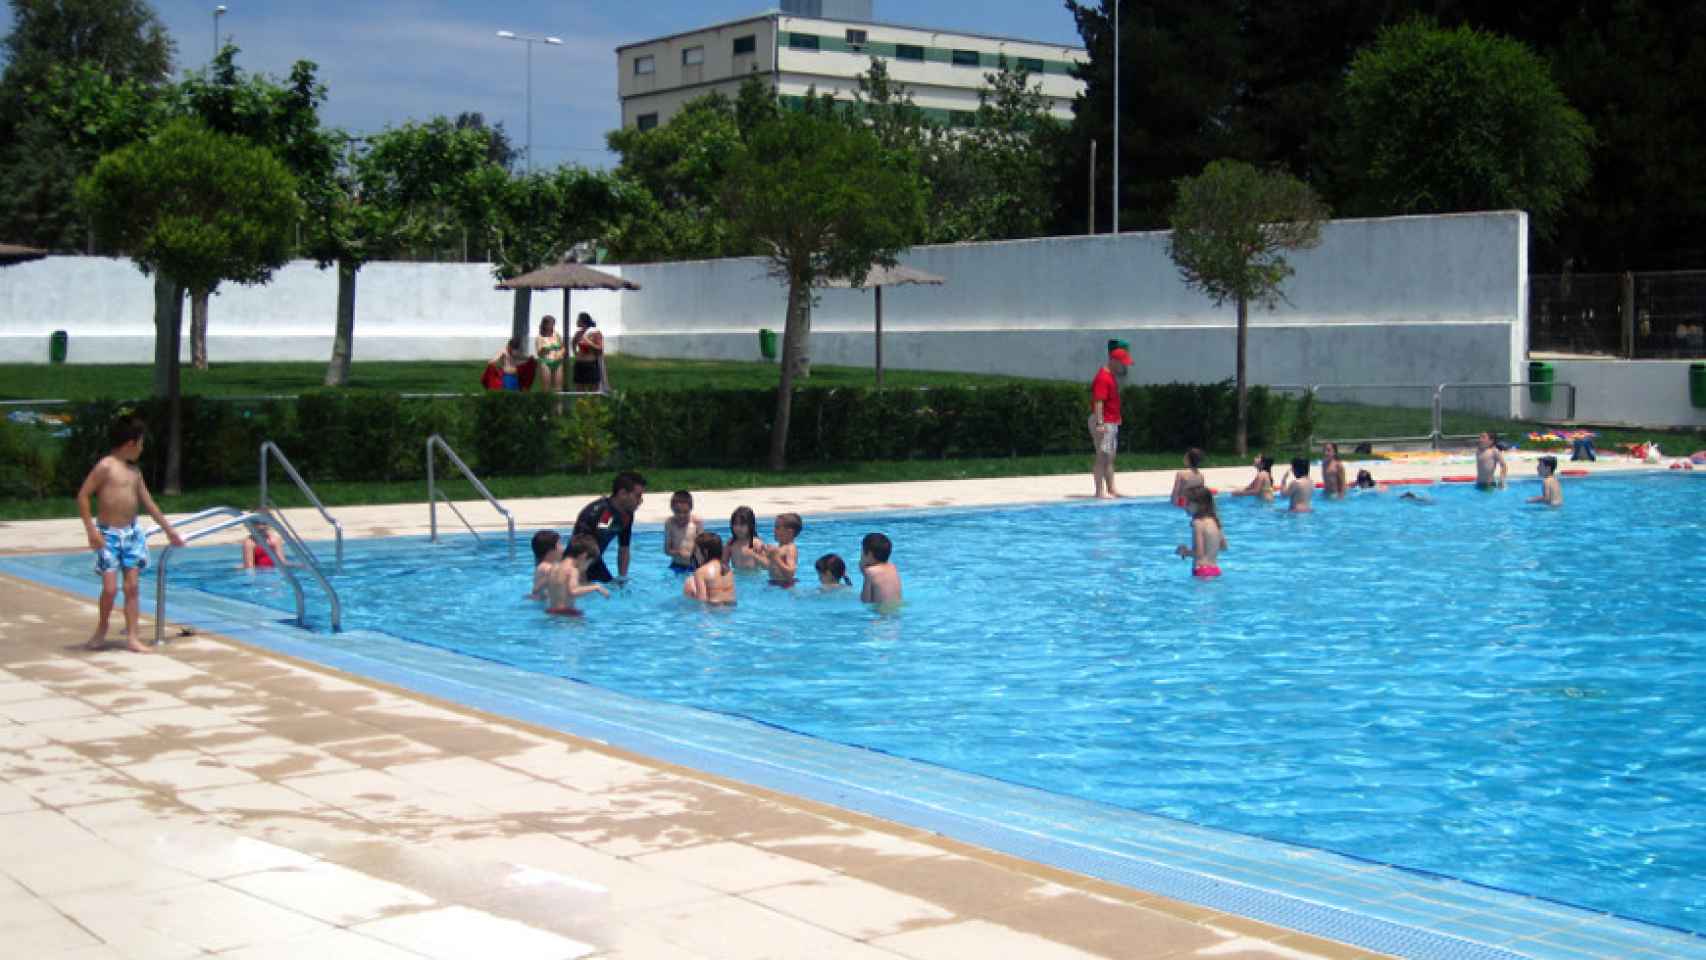 Sale a subasta la gestión del bar de la piscina de Guijuelo